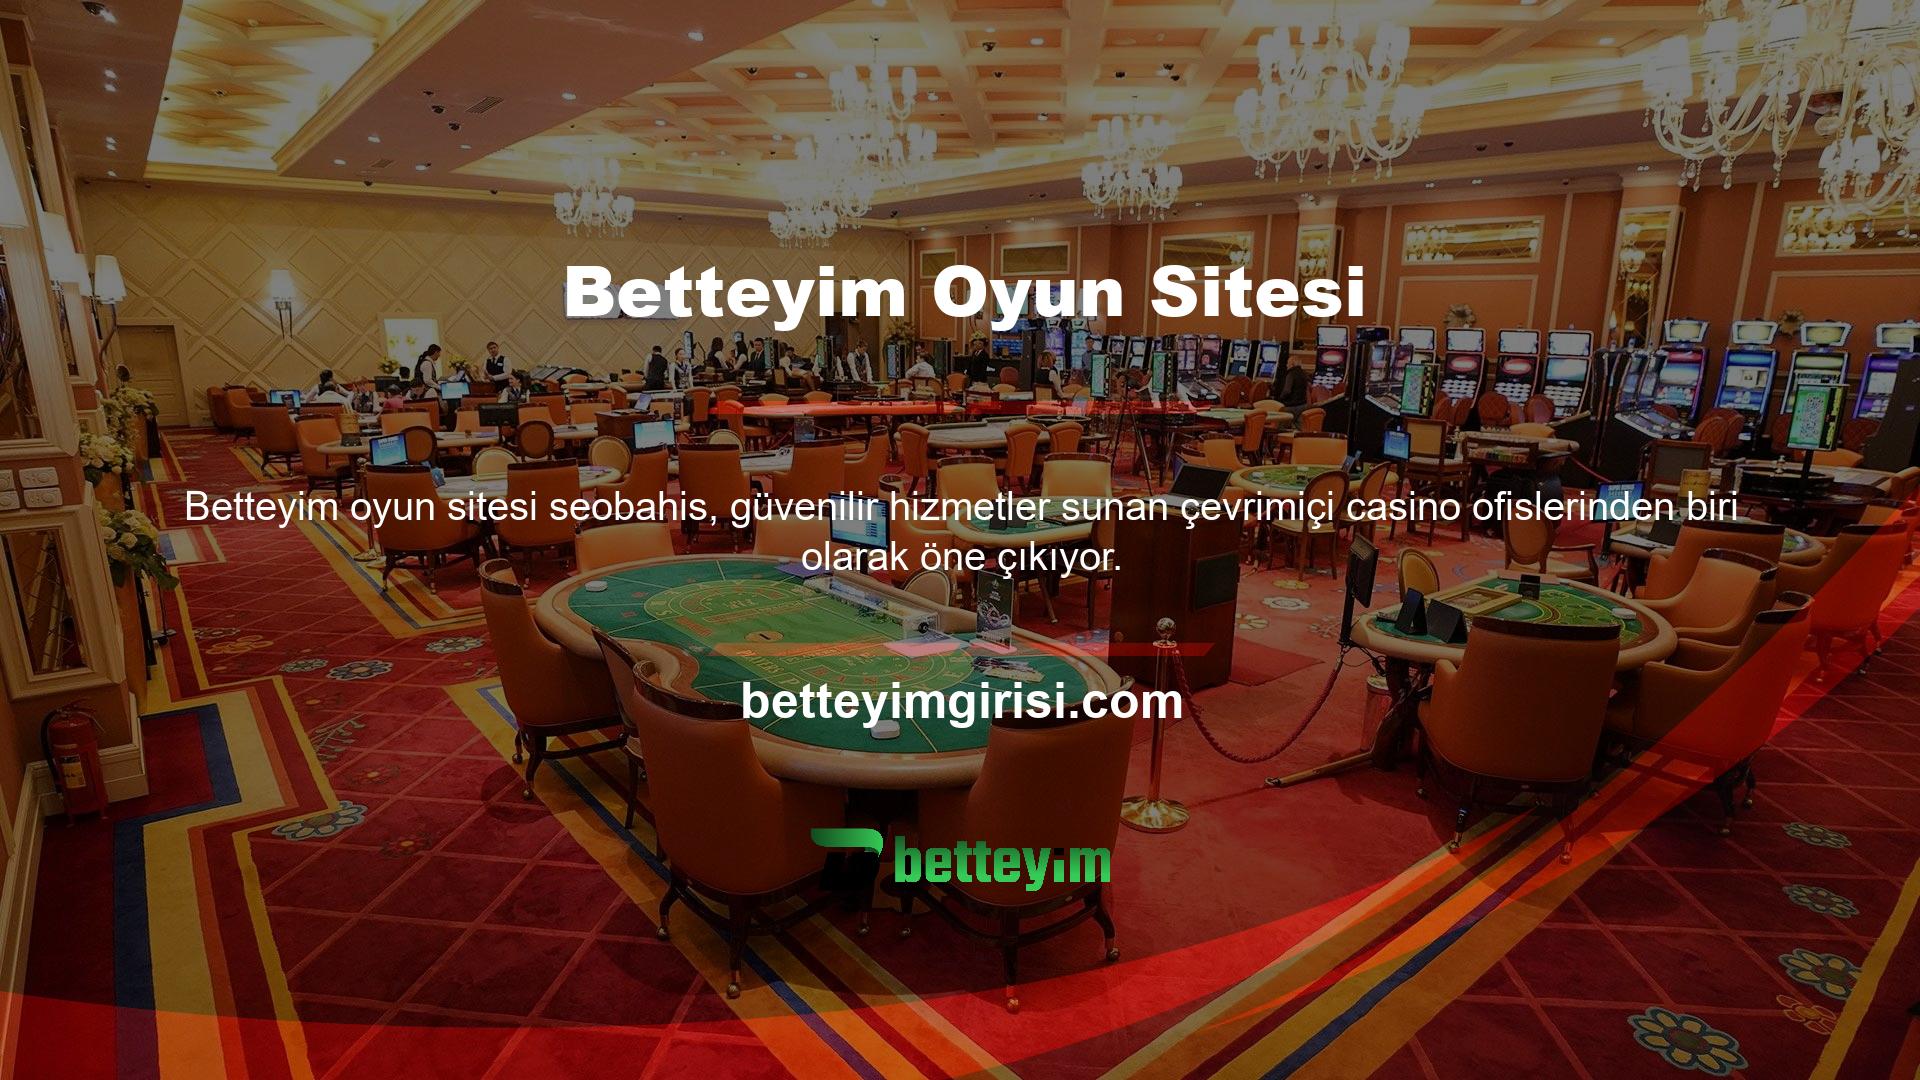 Betteyim canlı bahis sitelerinin güvenilir hizmetleri arasında Betteyim oyun siteleri, casino oyunlarında kaliteli ve adil oyun hizmetleriyle öne çıkıyor